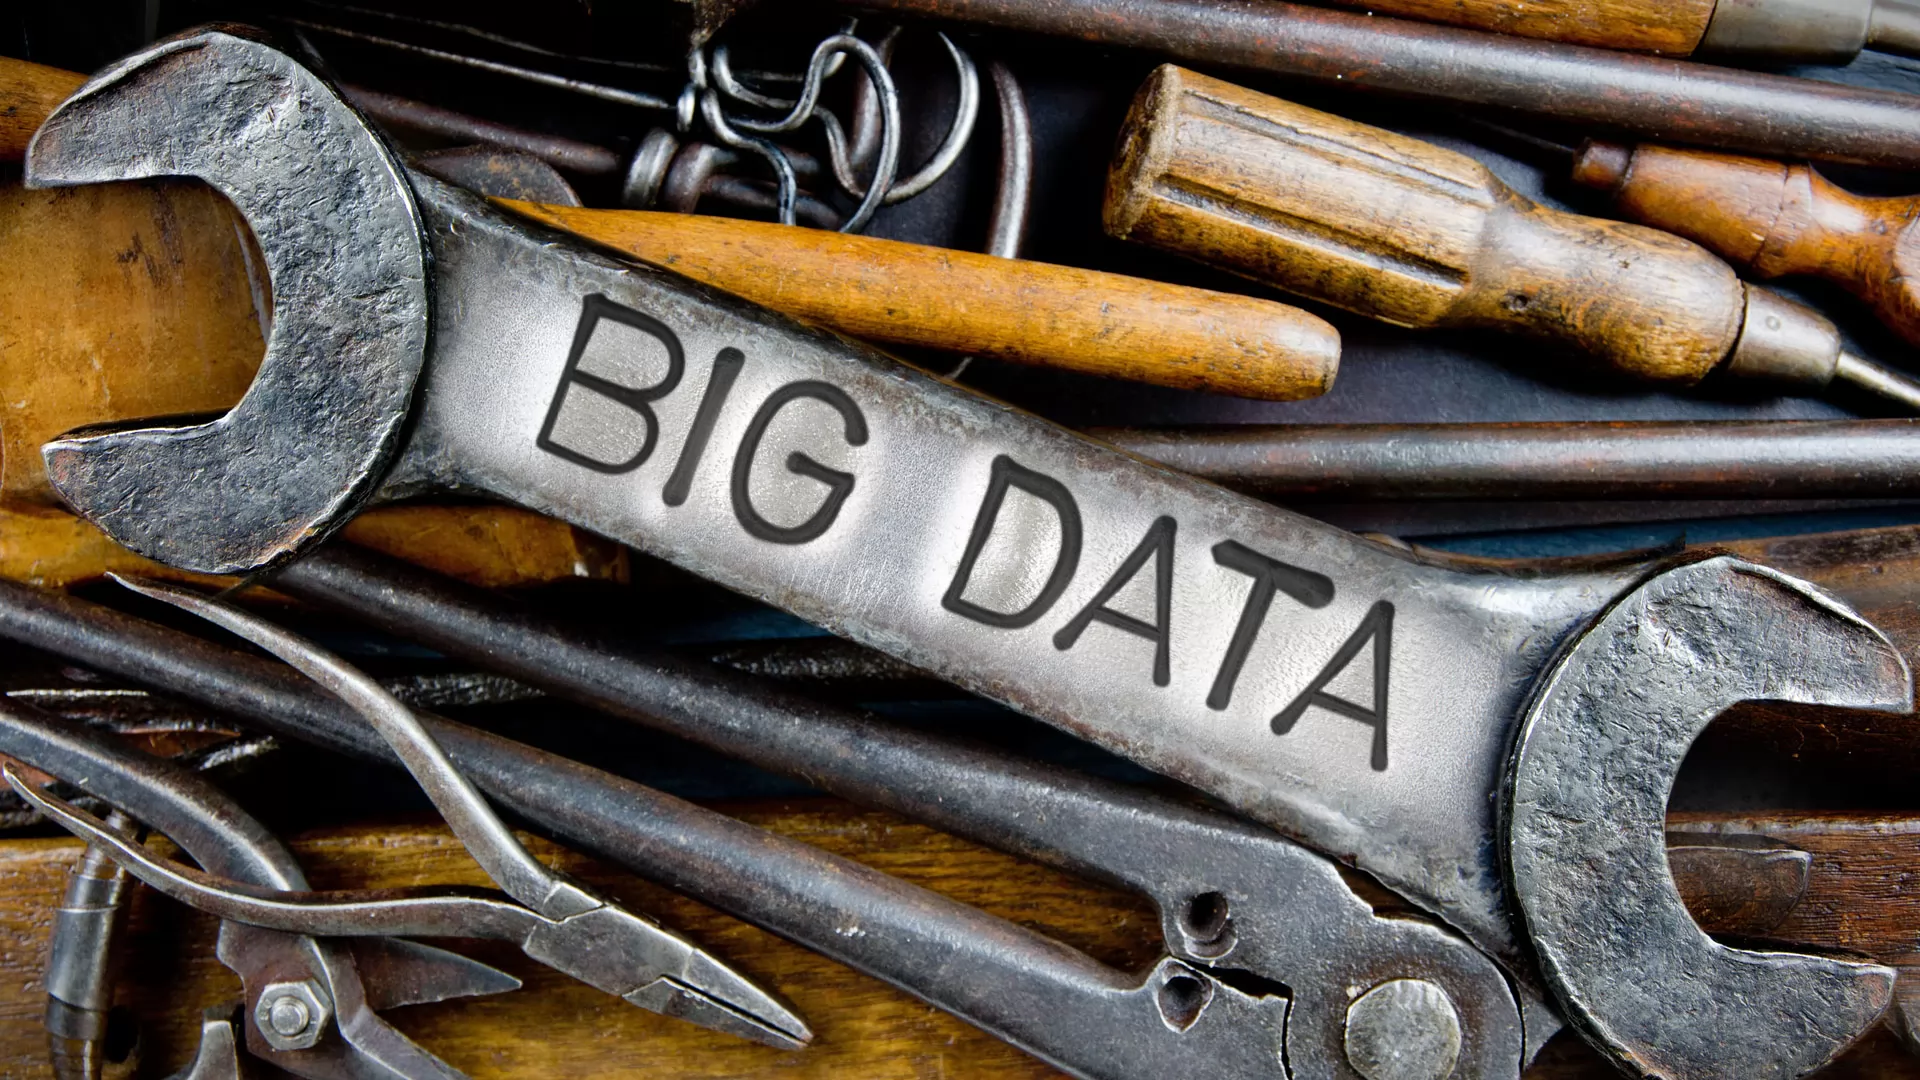 Big Data Tools